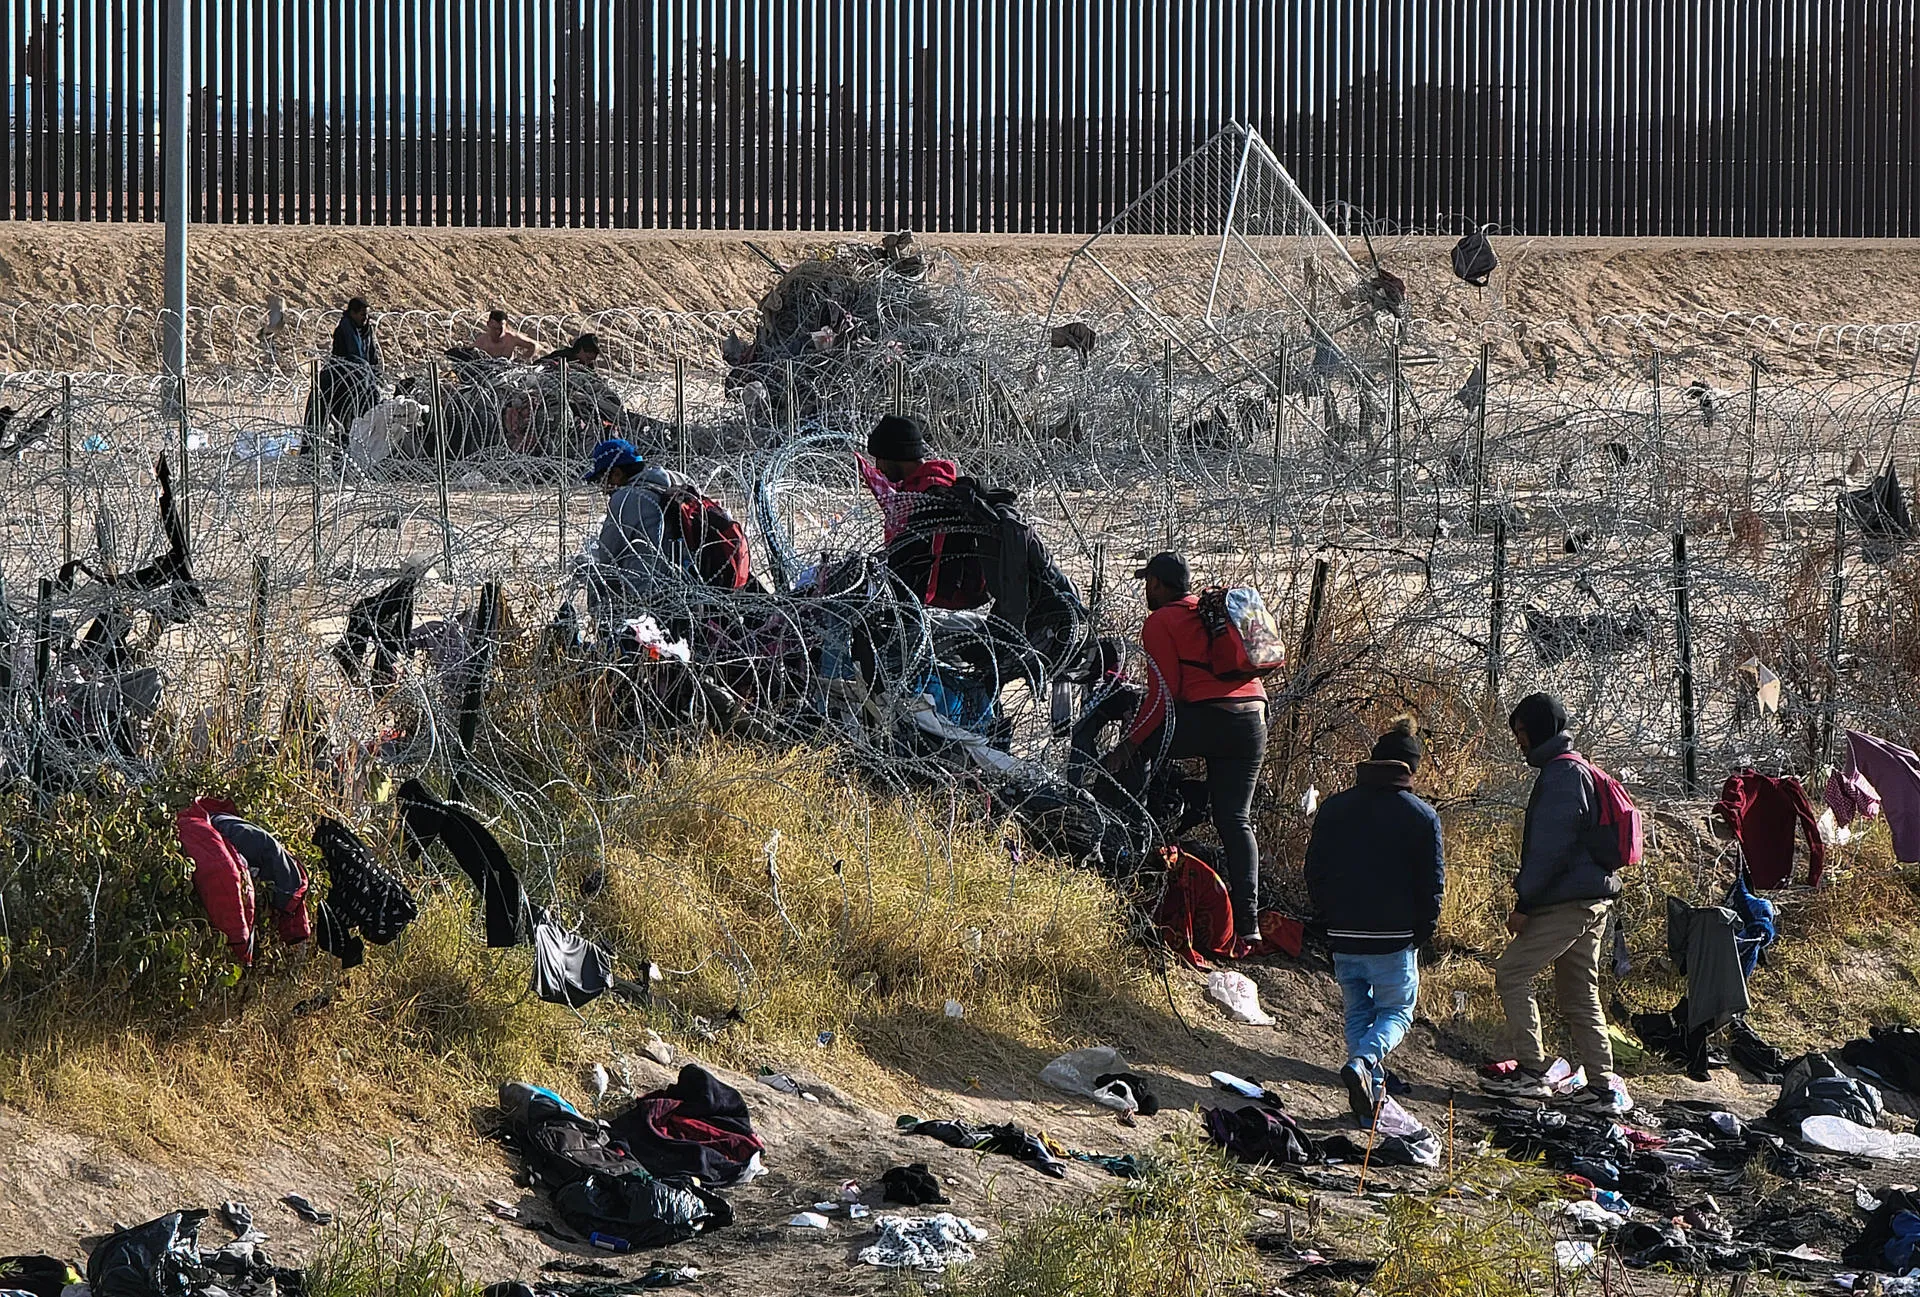 Avanza fuerte acuerdo migratorio en el Senado: busca restringir el asilo y reducir cruces fronterizos